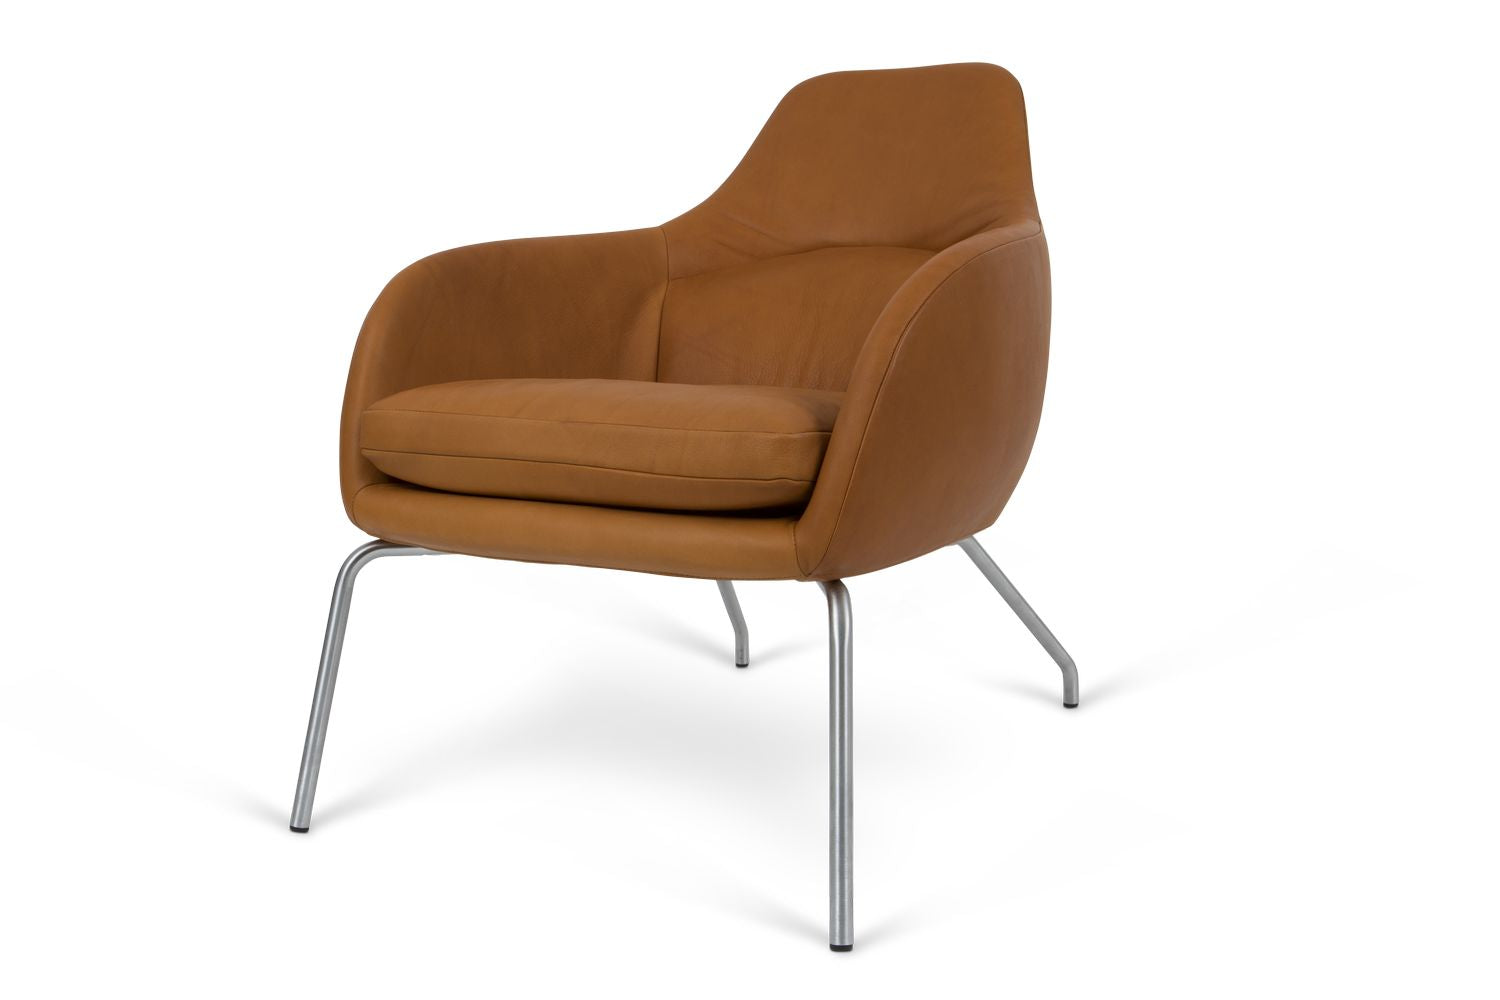 Bent Hansen Asento Lounge -stoel, geborsteld staal/cognac Adrian leer